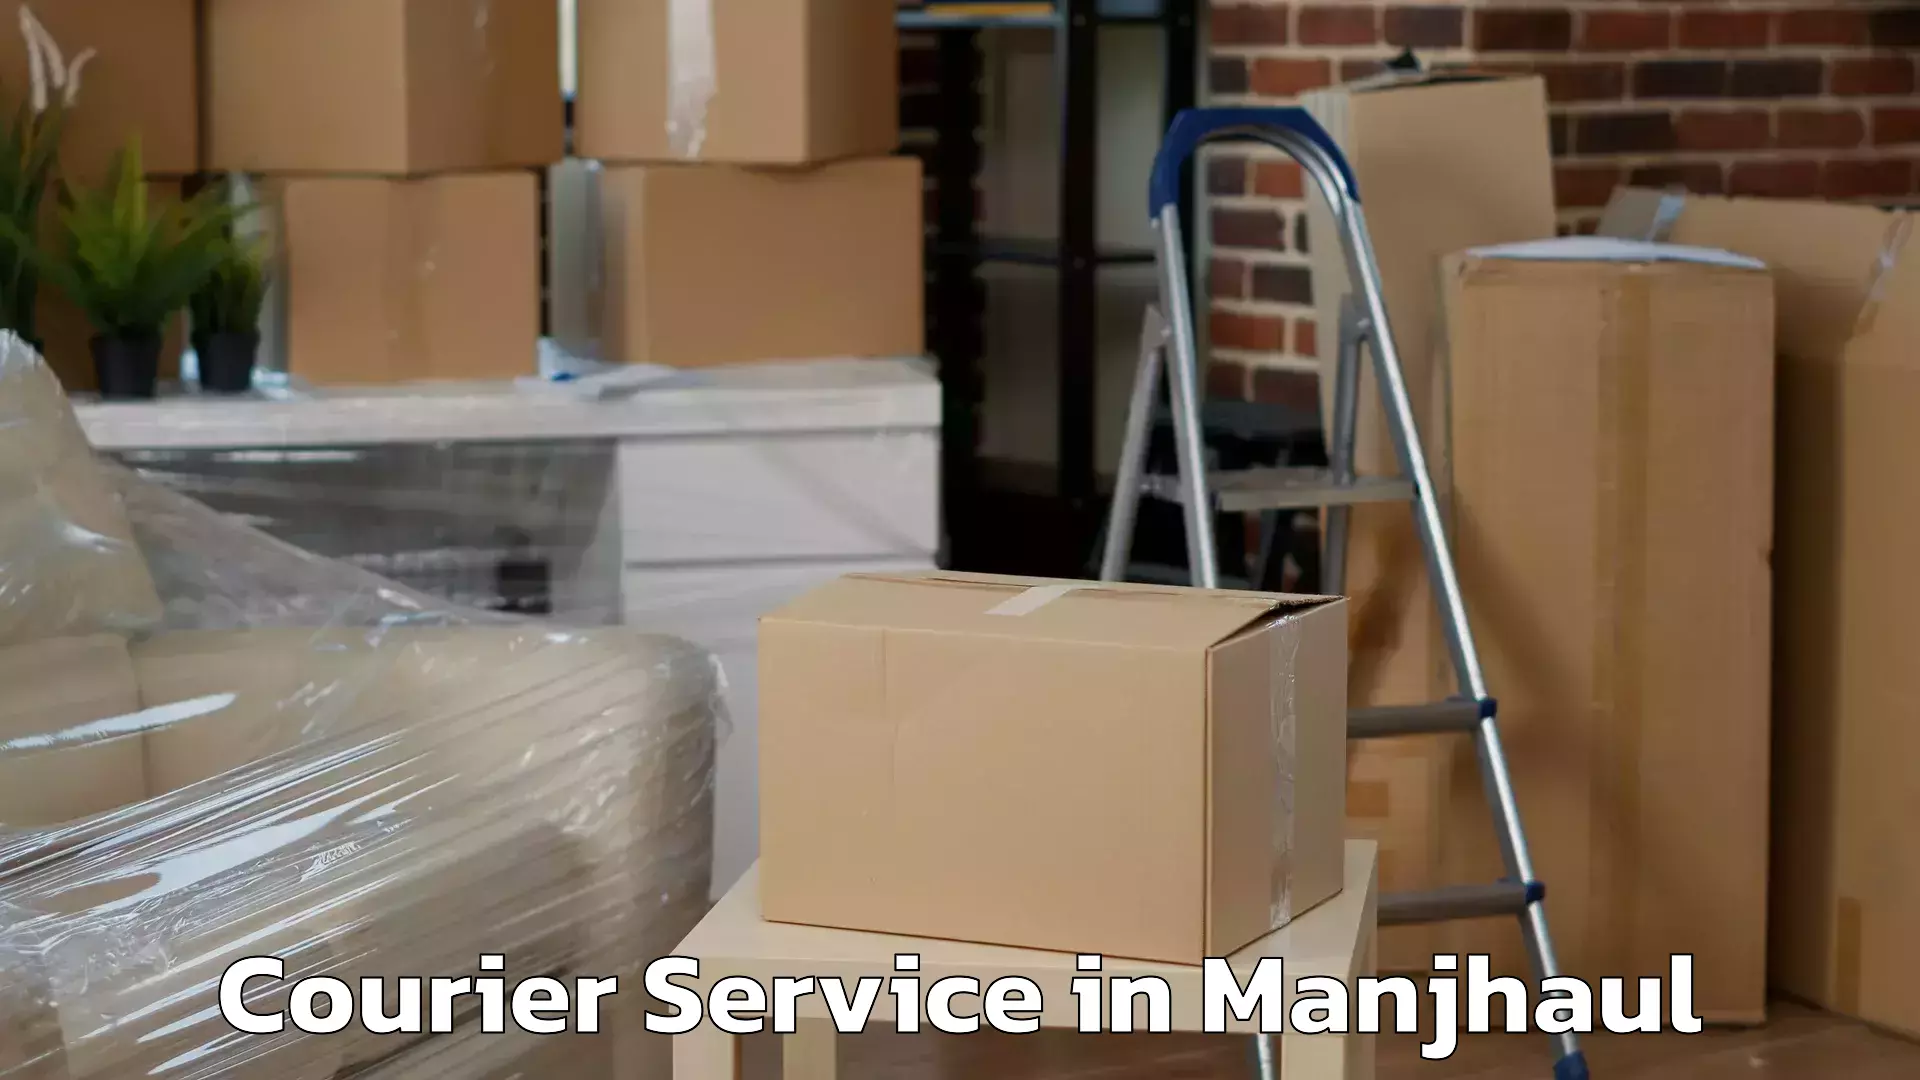 User-friendly delivery service in Manjhaul